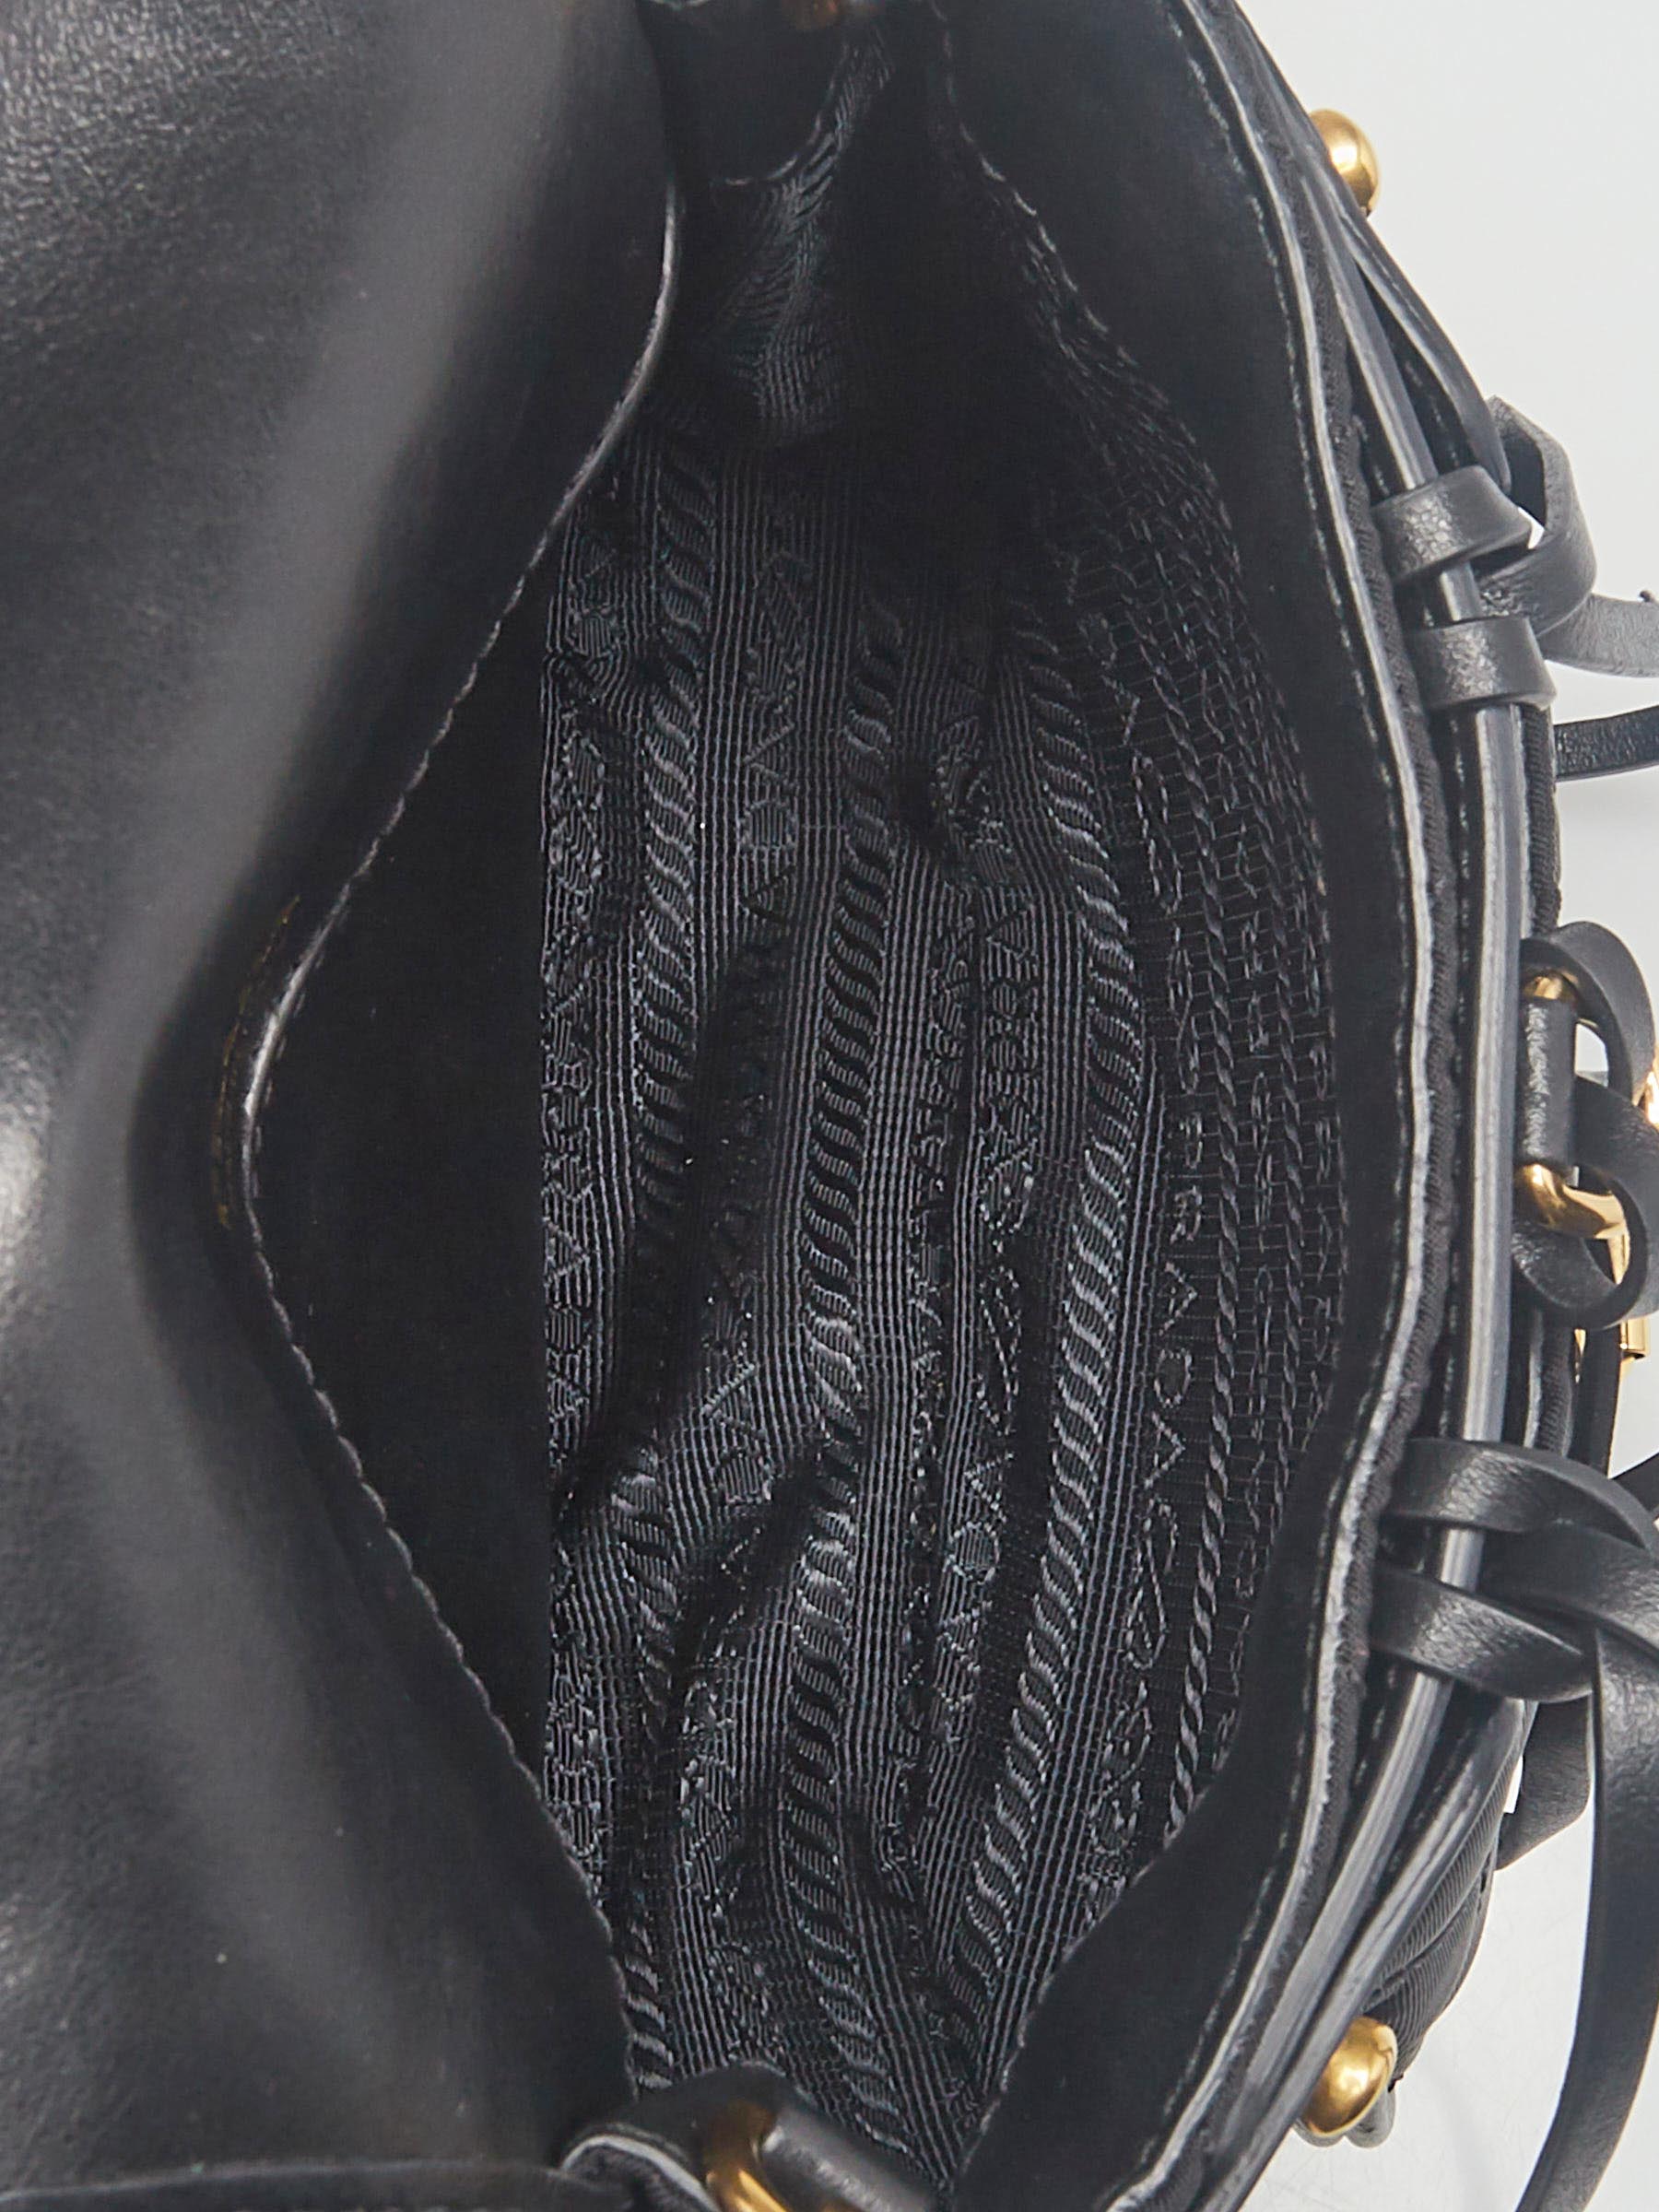 Prada Black Tessuto Nylon Crossbody Messenger Bag 2VD052 - Yoogi's Closet